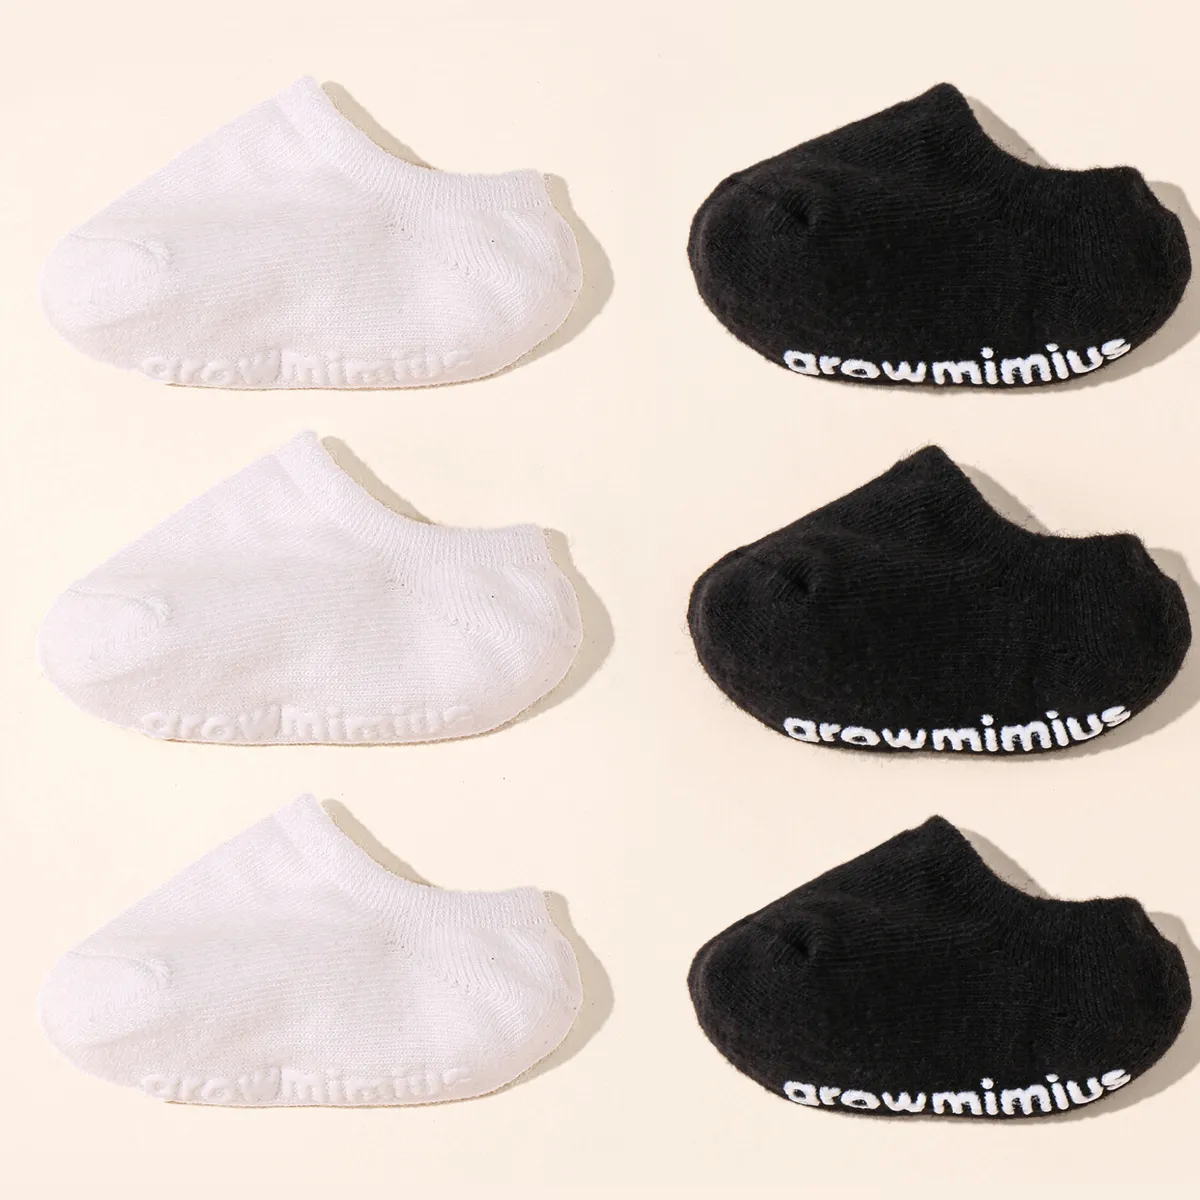 6 أزواج من الجوارب الطفل بلون نقي غير قابلة للانزلاق أسود / أبيض big image 1